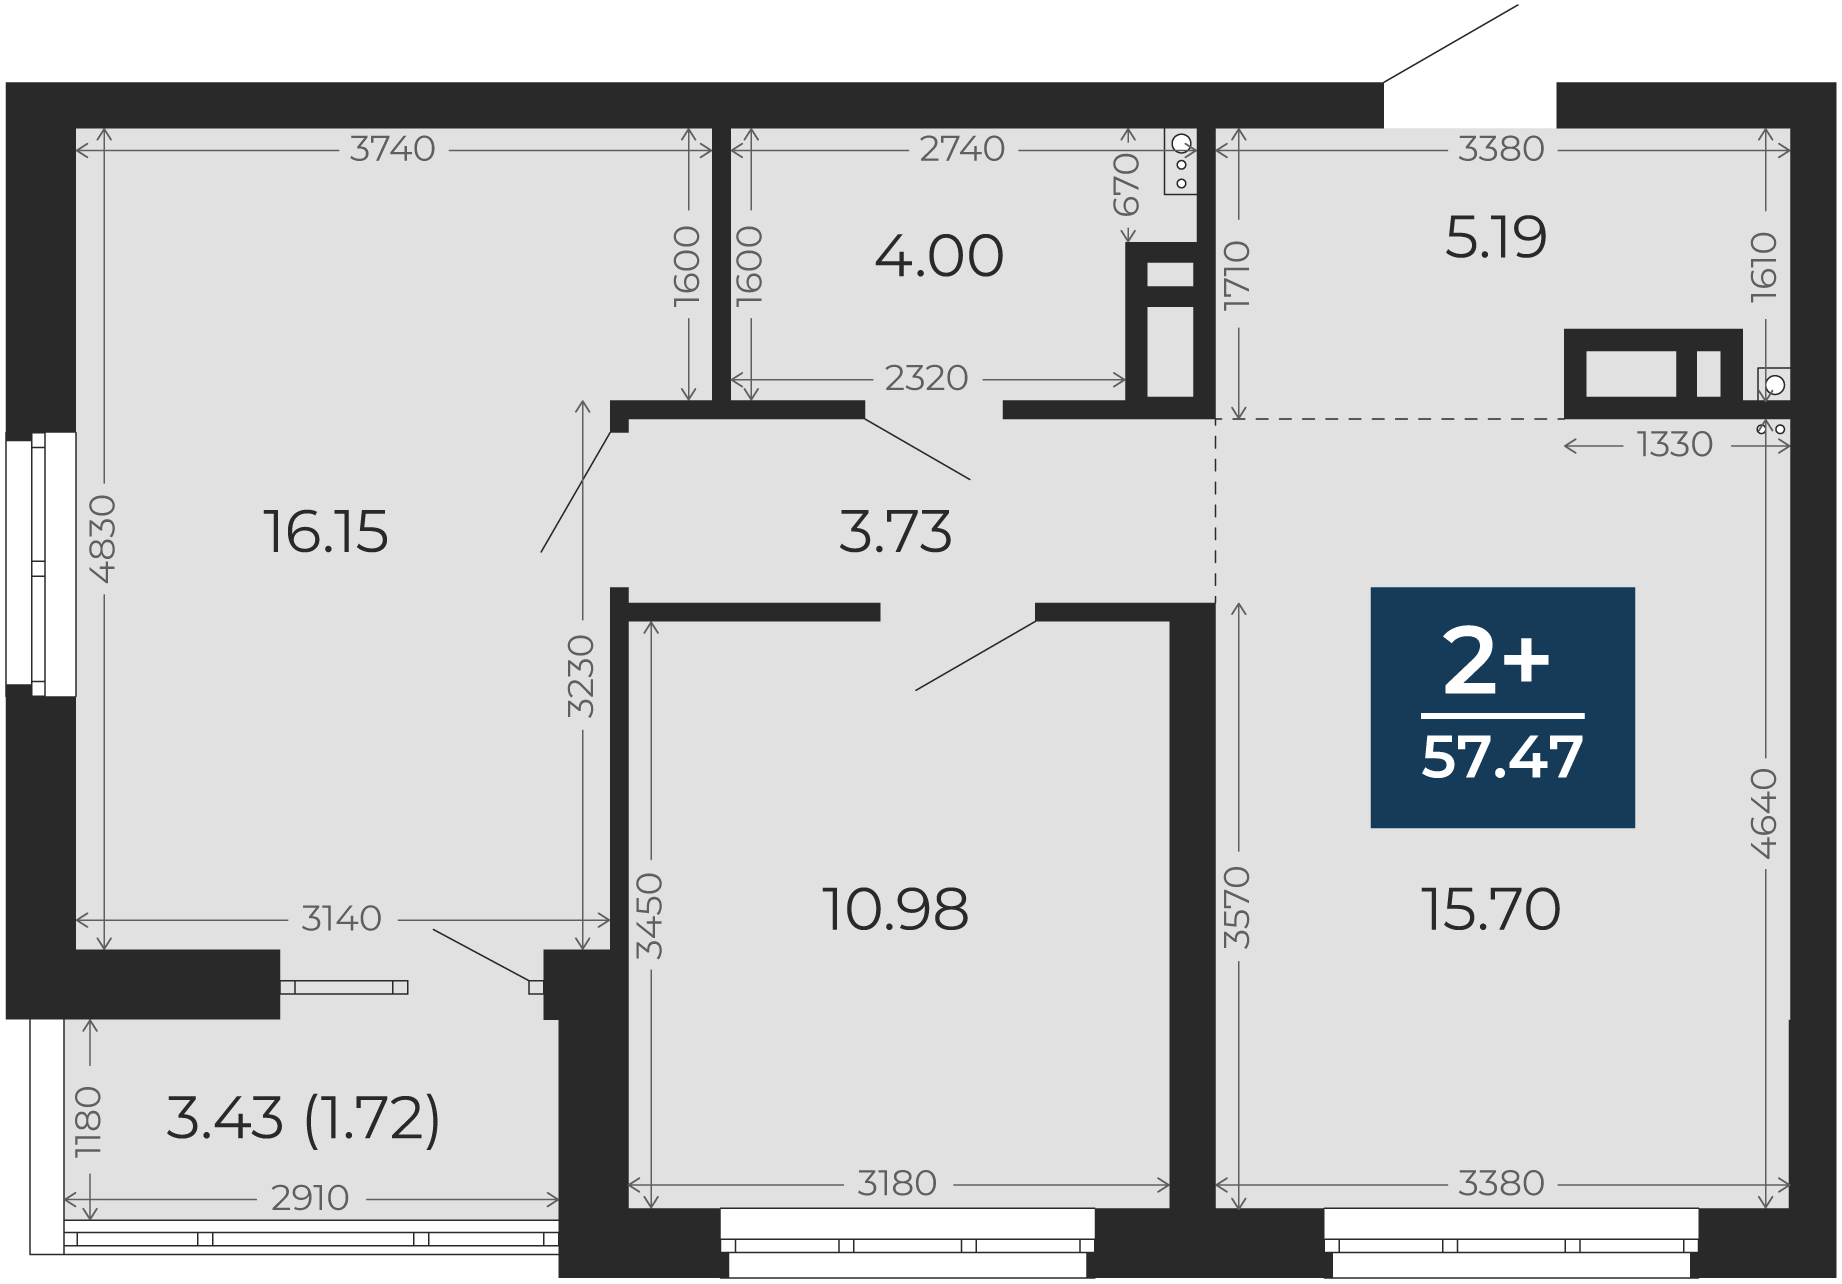 Квартира № 89, 2-комнатная, 57.47 кв. м, 12 этаж